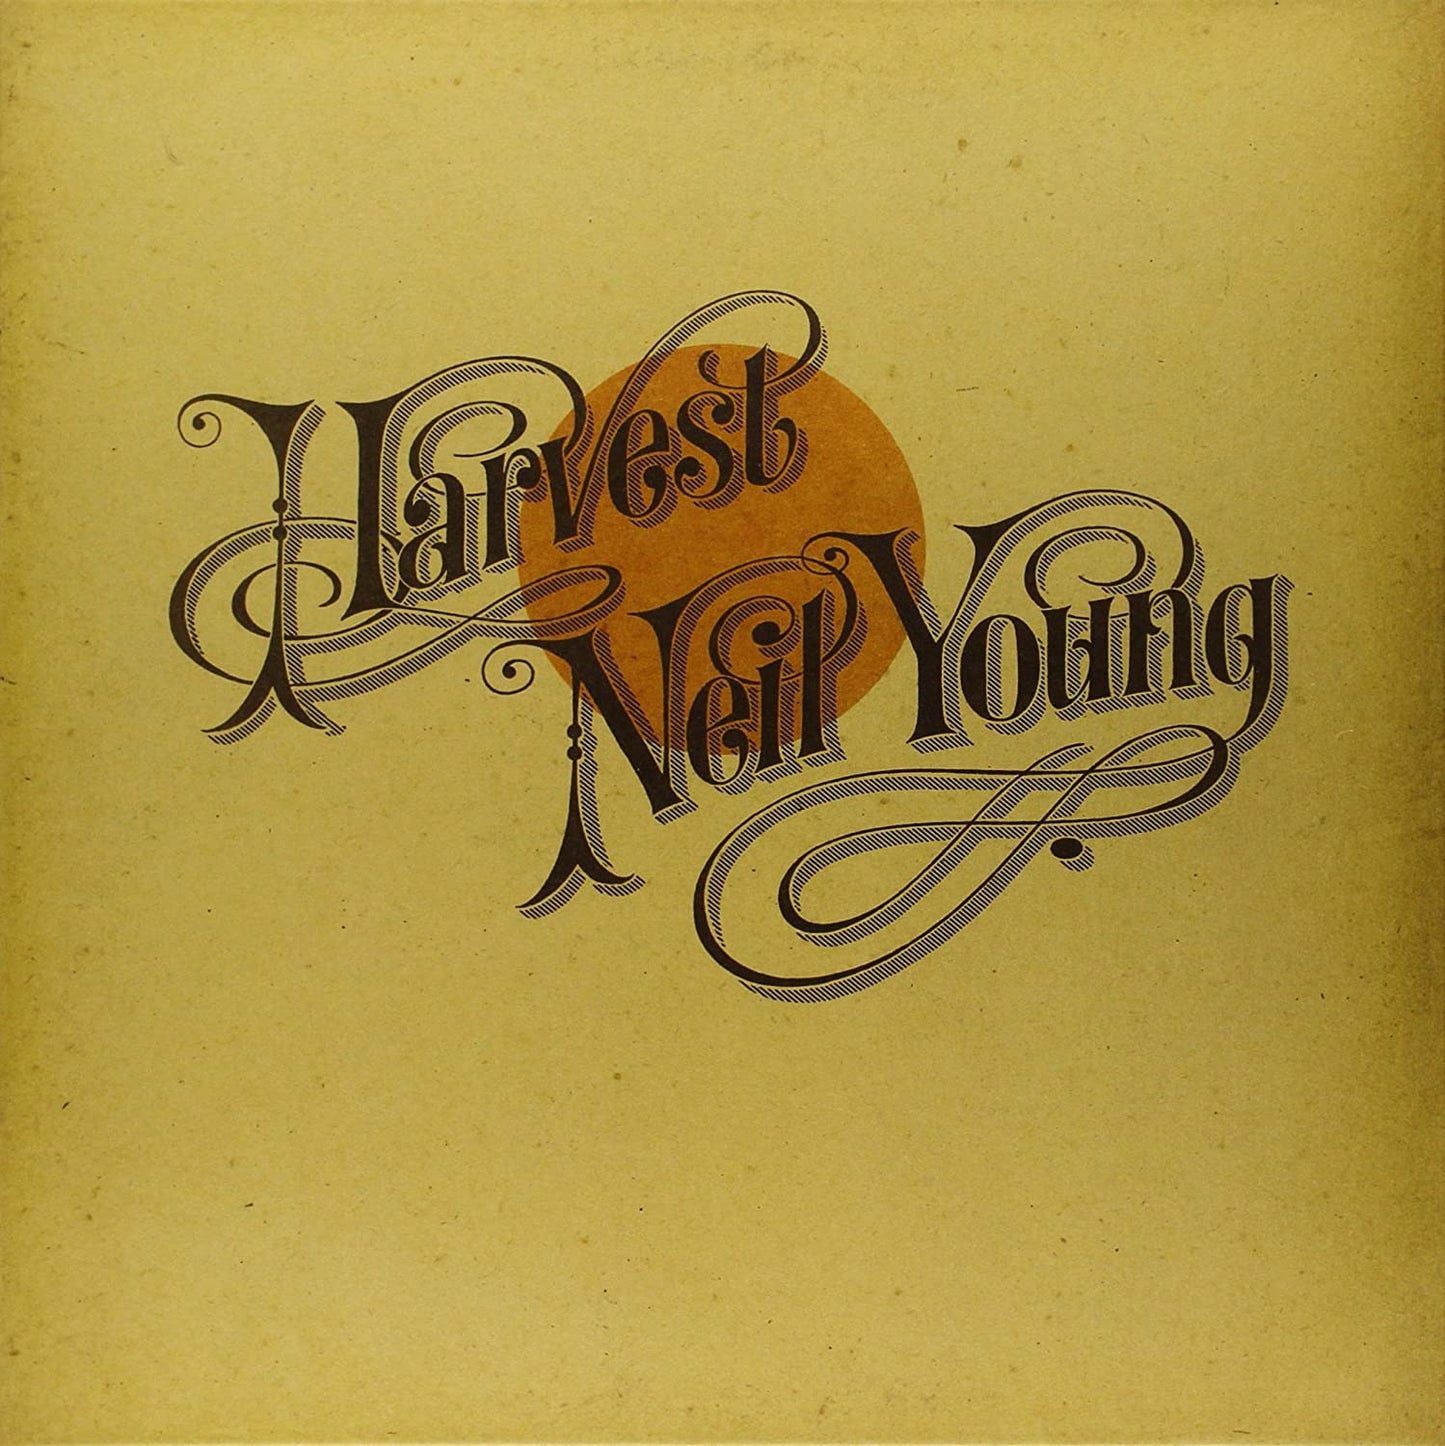 NEIL YOUNG - HARVEST - LP DE VINILO